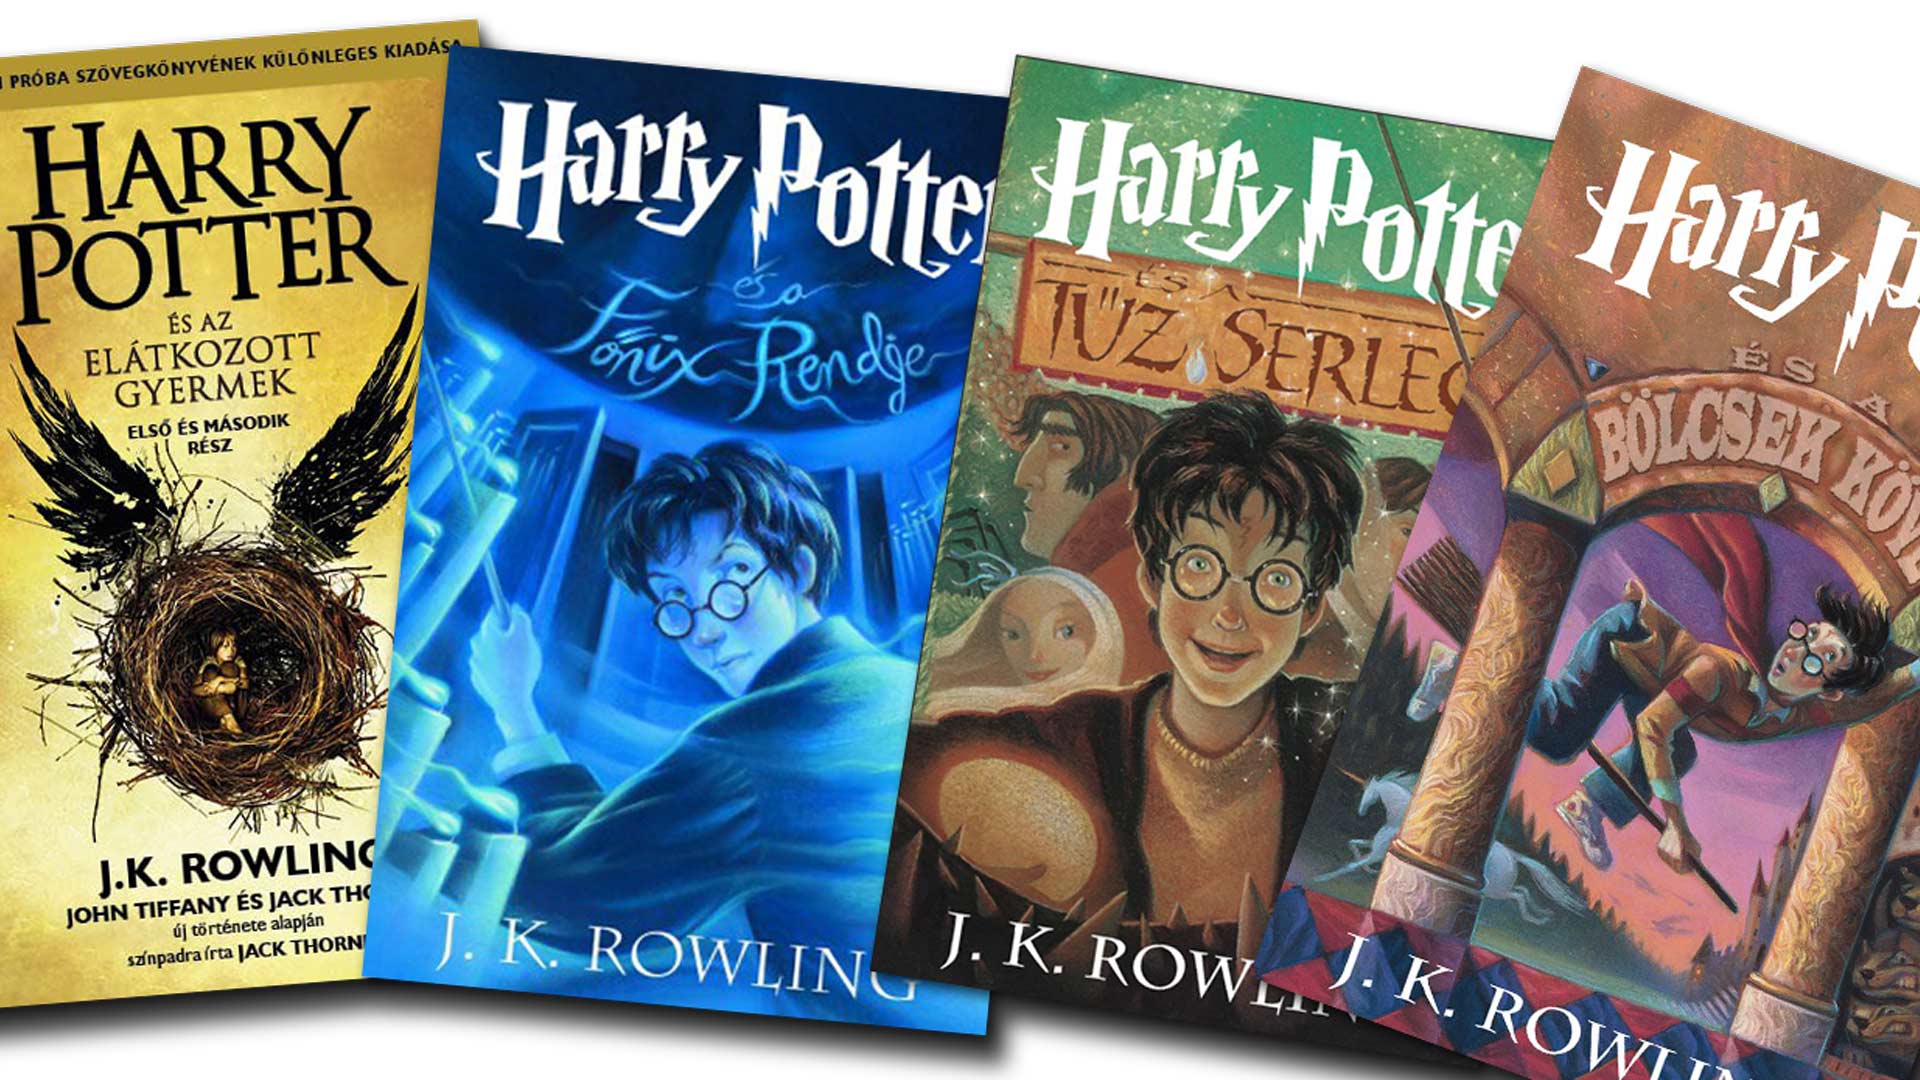 A Central Médiacsoport megvásárolta a Harry Potter-könyvek és a skandináv sikerkrimik kiadóját